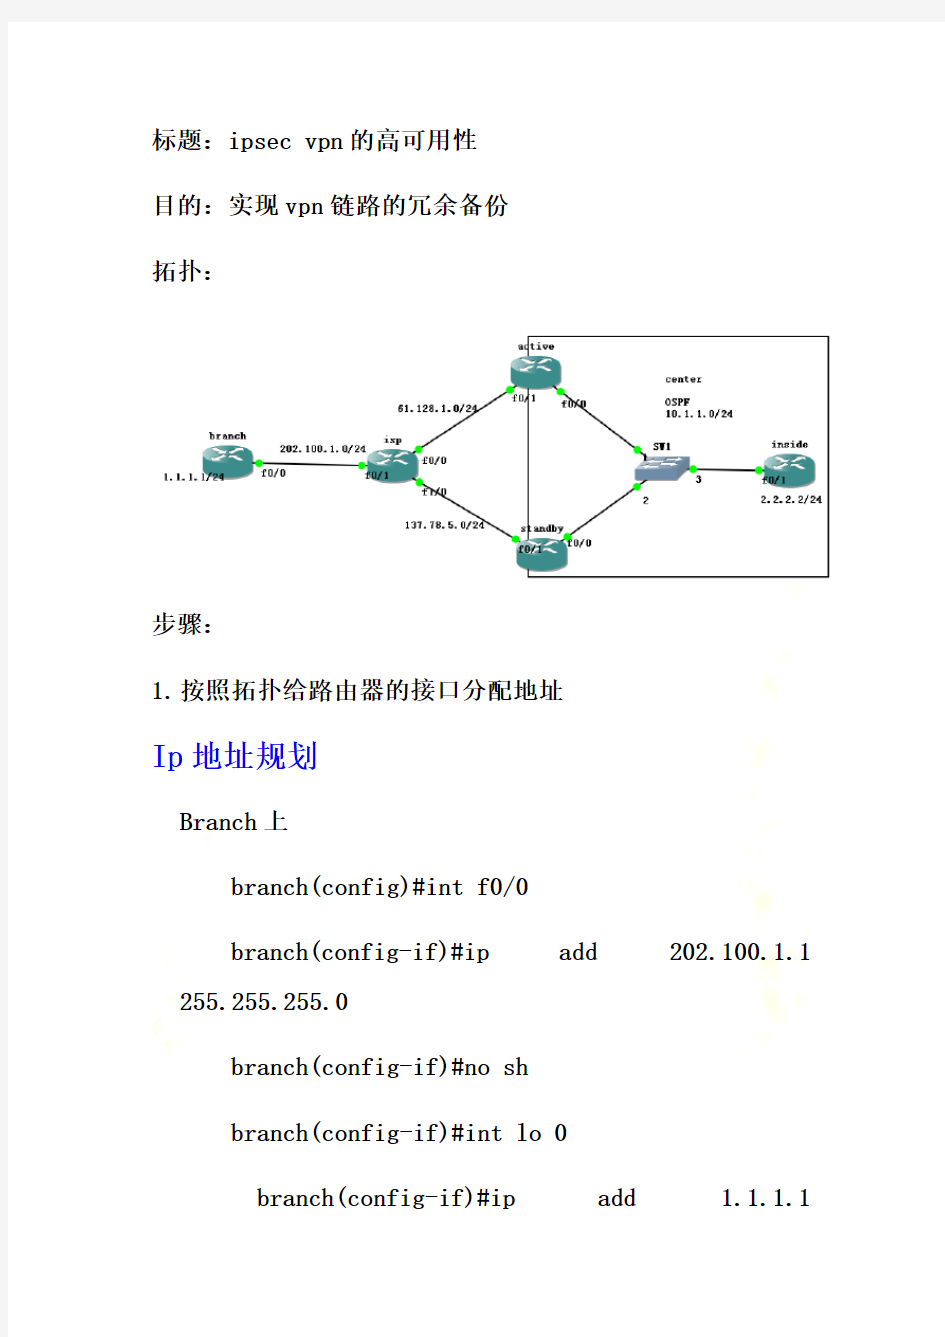 ipsec-vpn高可用性链路冗余备份实例